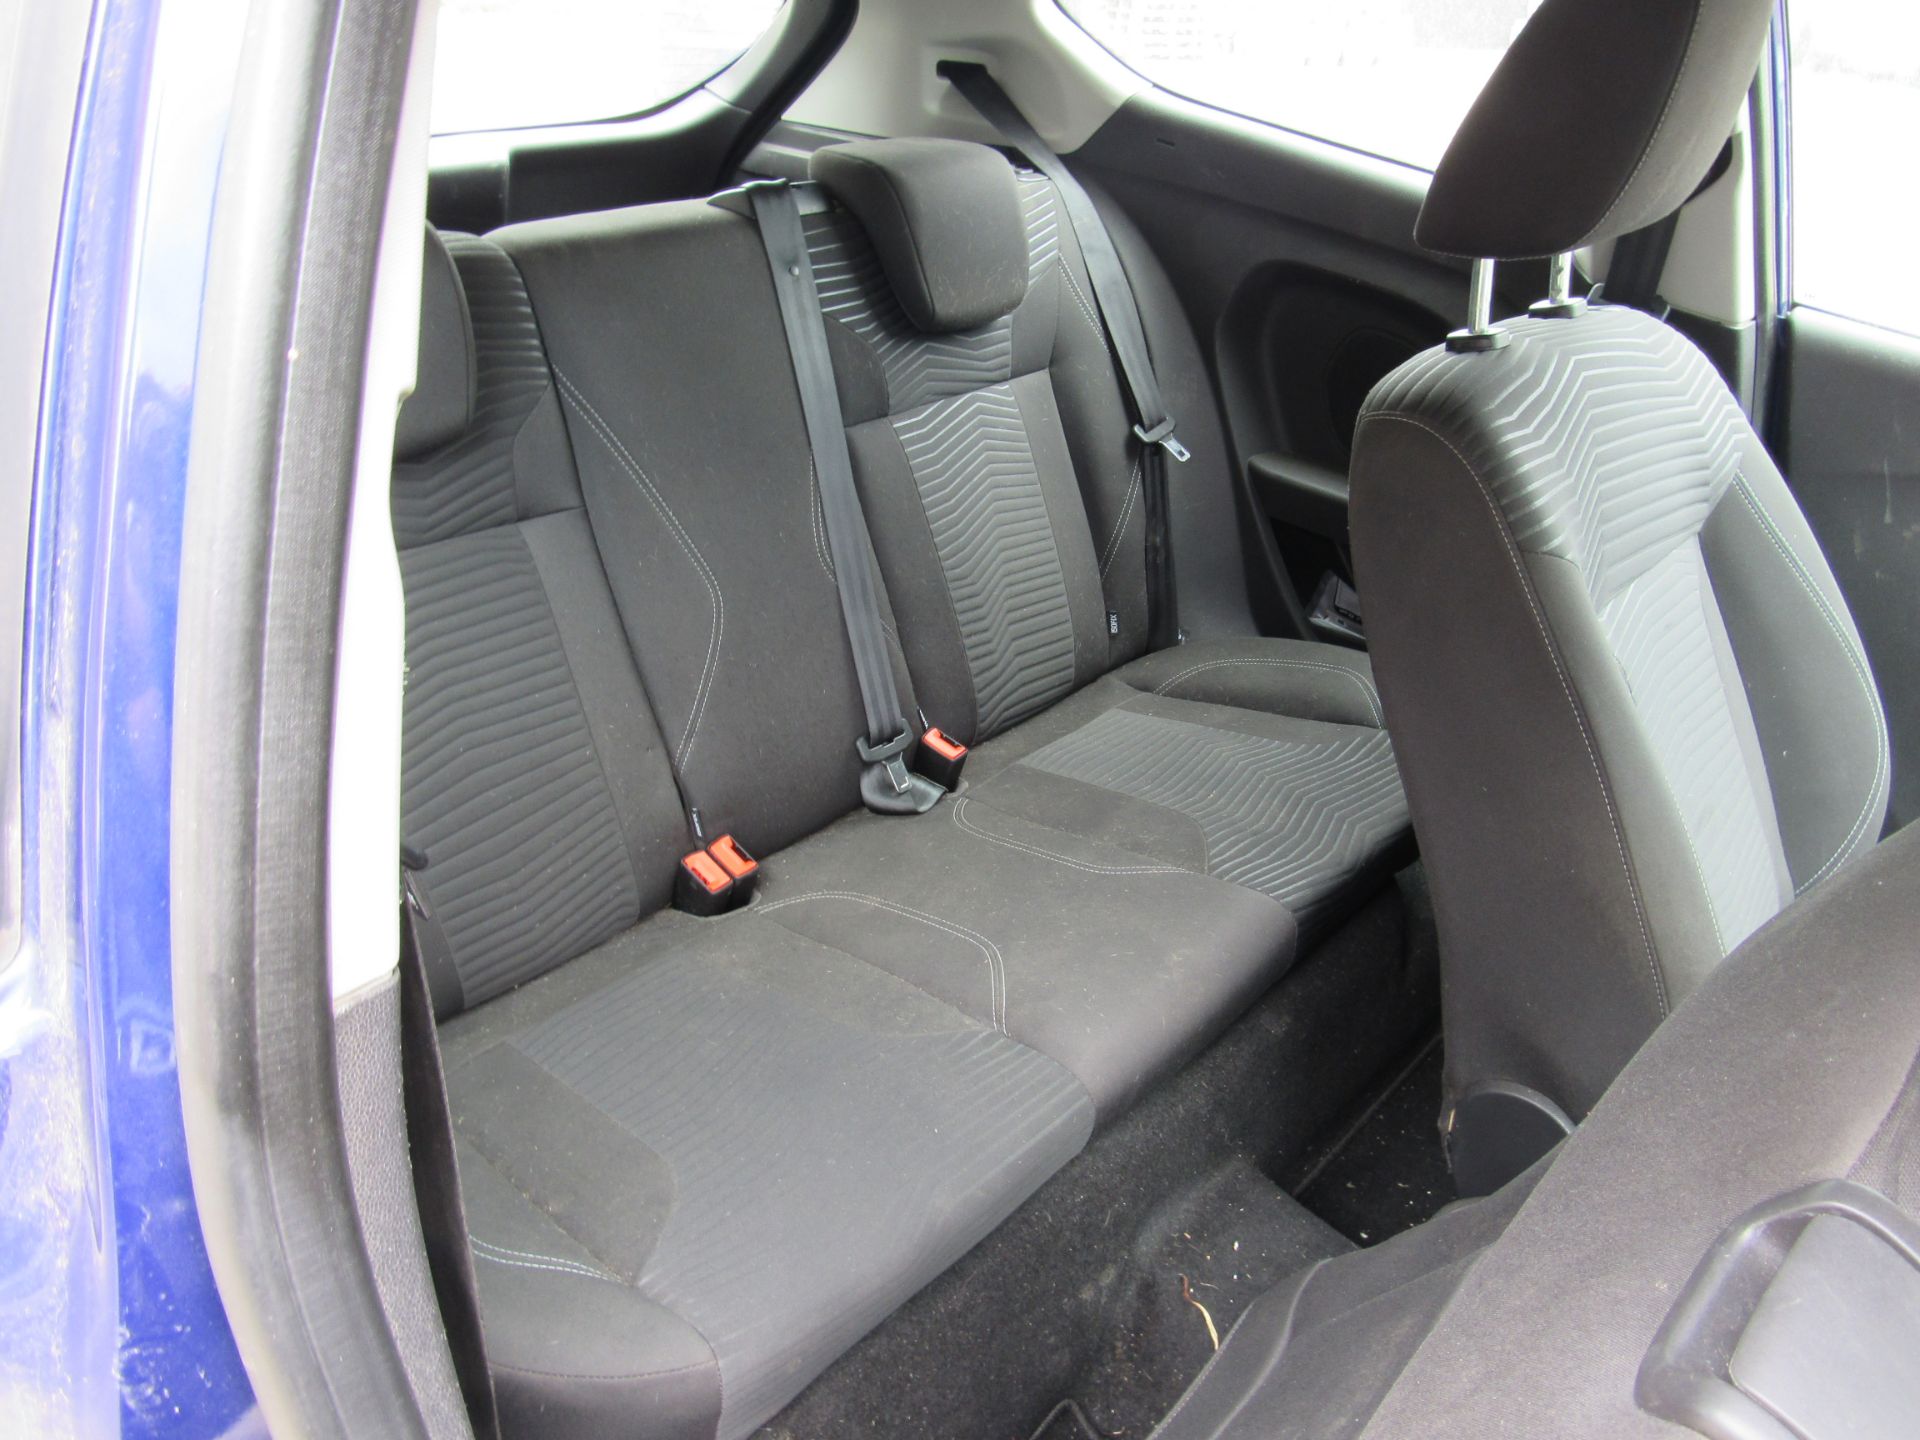 Ford Fiesta Hatchback 1.0 EcoBoost Zetec 3dr, Registration YF14 PVT, Odometer 103,191miles, V5 - Image 9 of 11